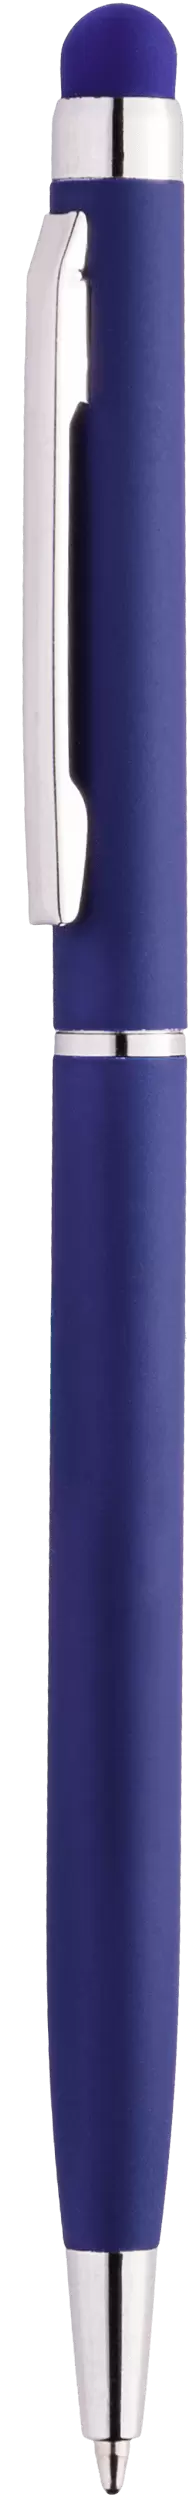 Ручка KENO SOFT Темно-синяя 1116.14